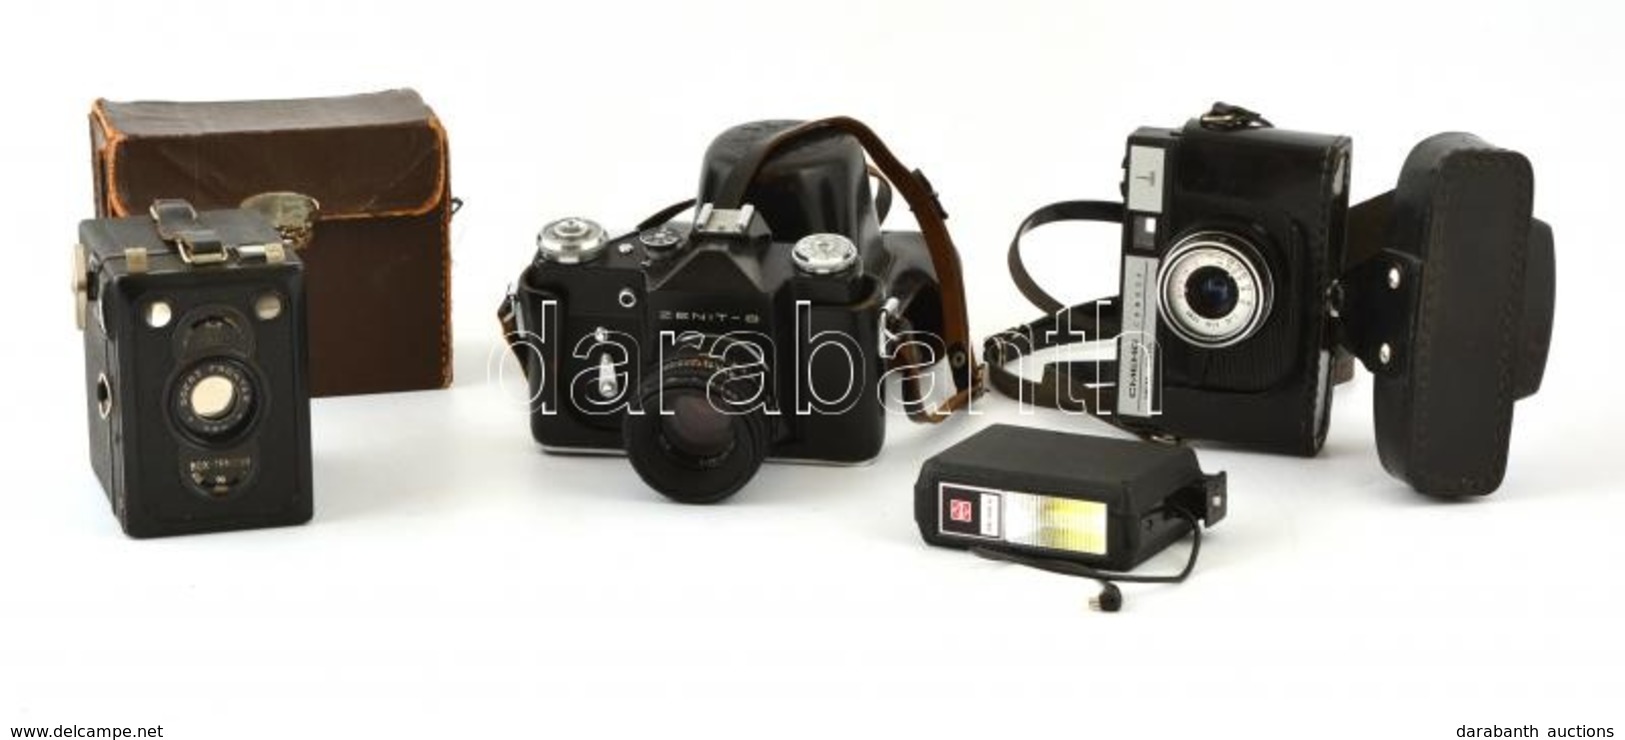 3 Kamera: Zenit-B Fényképezőgép, Helios 44-2 2/58 Objektívvel Tokjában, Hozzá National PE182S Vaju, Smena Symbol Fénykép - Fotoapparate